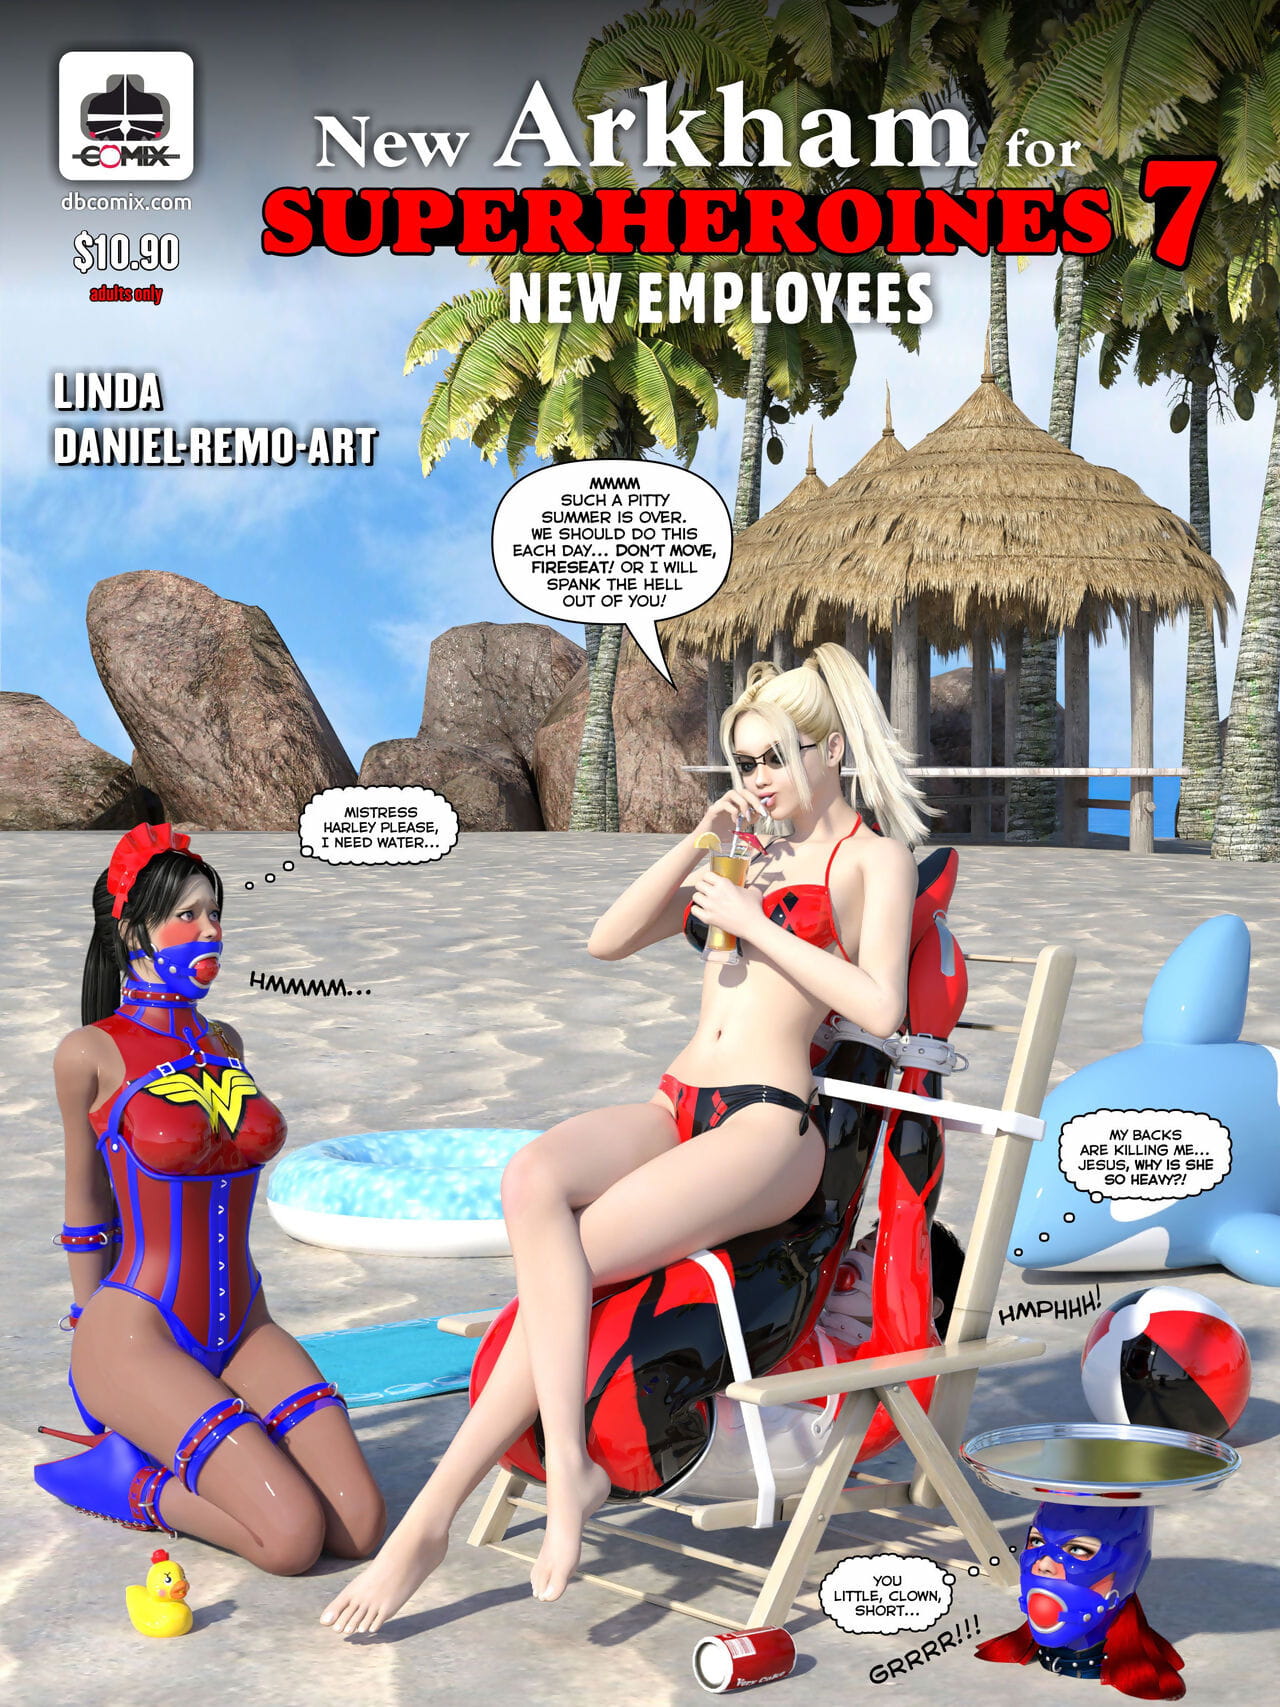 nuevo arkham para superheroines 7 - nuevo los empleados page 1